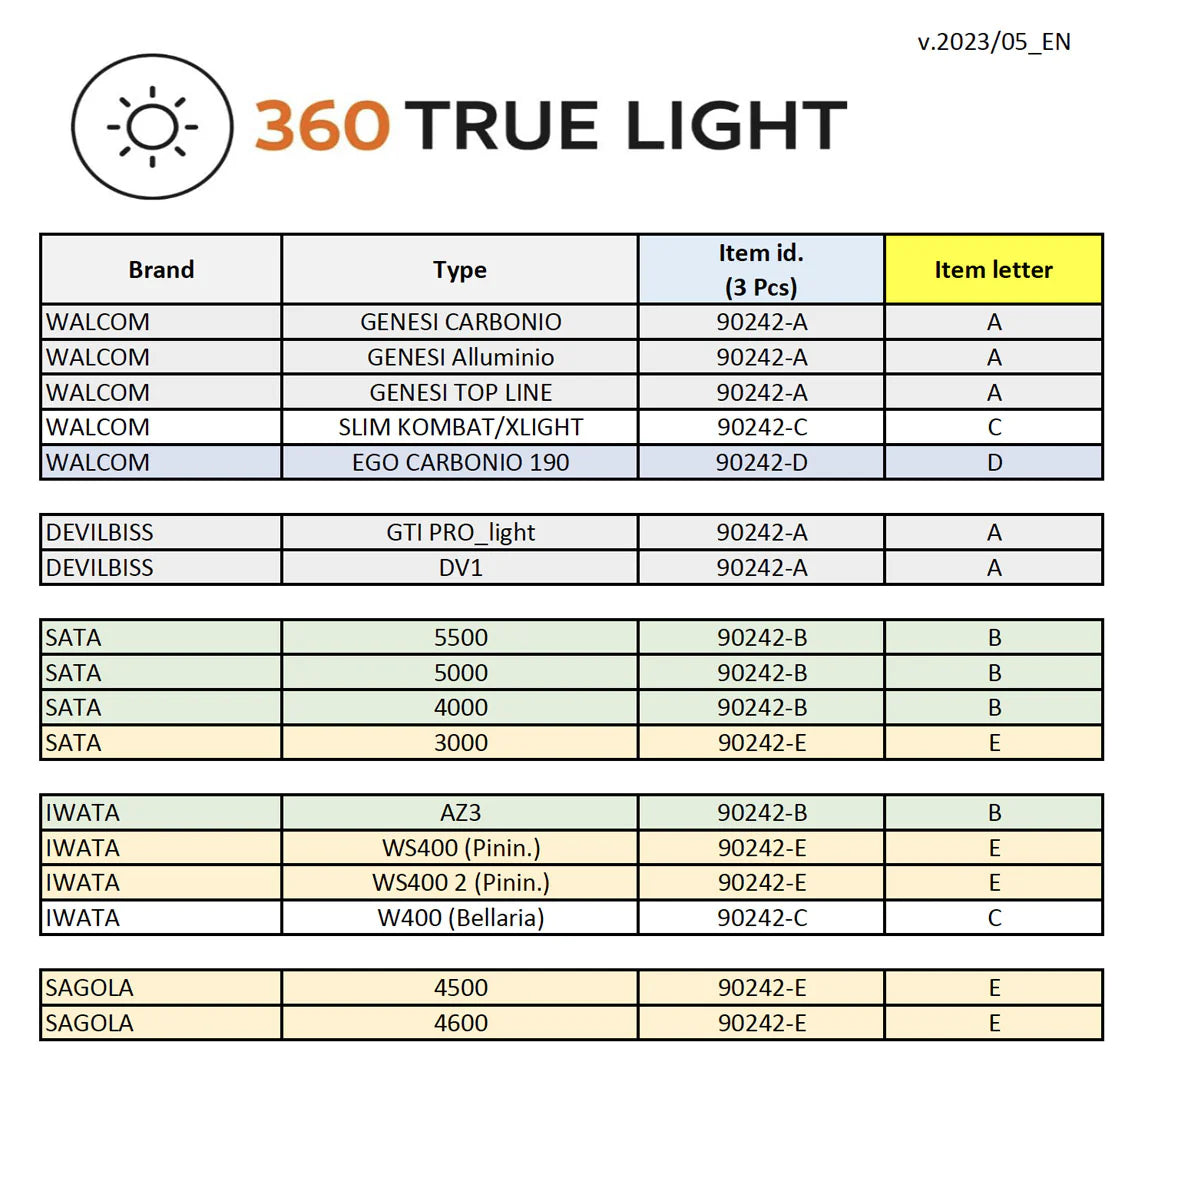 360 True Light